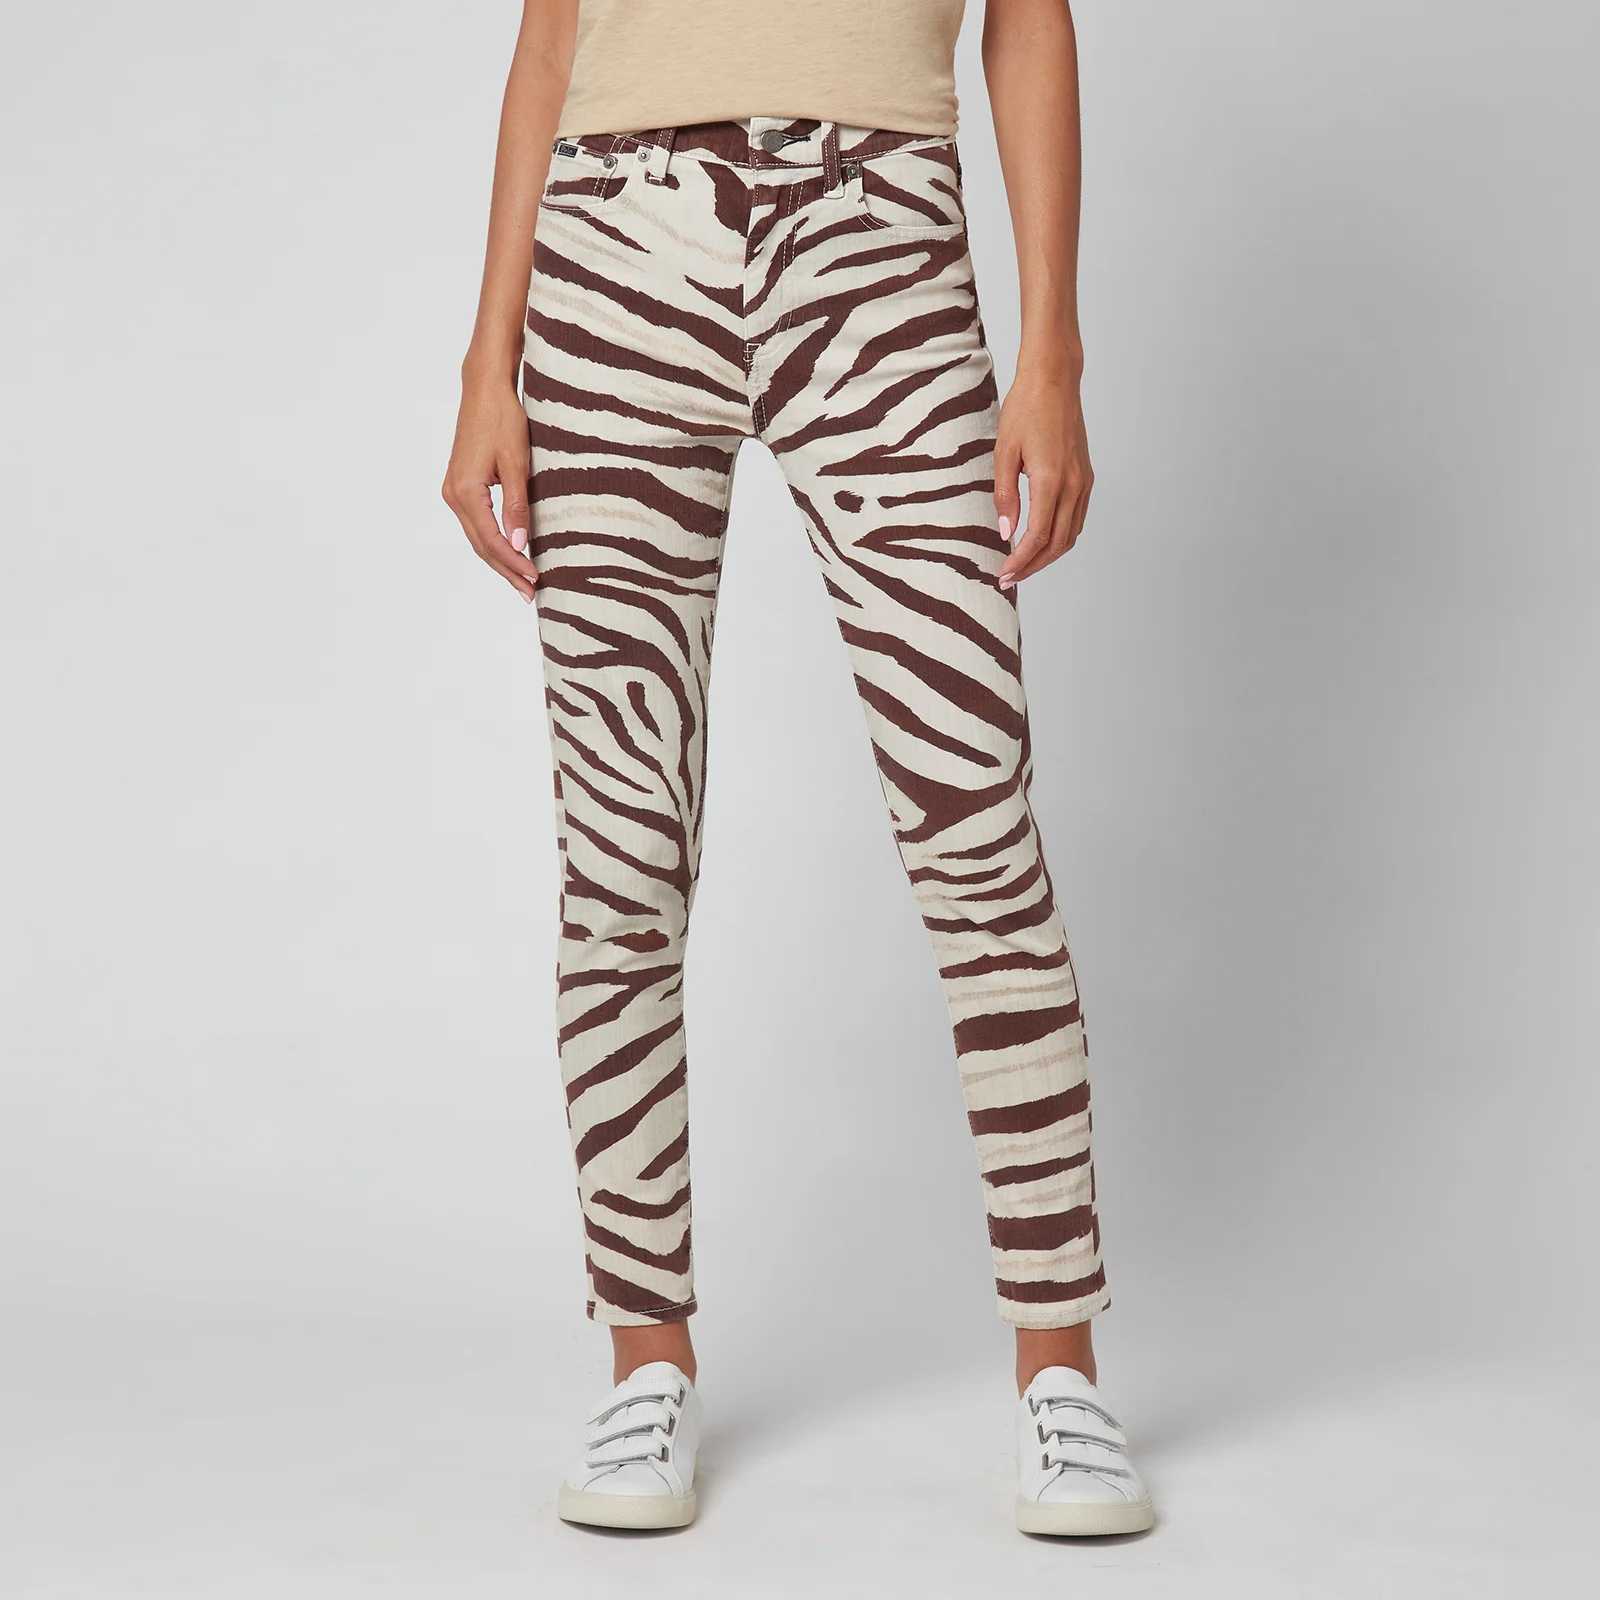 Polo Ralph Lauren Women's High Rise Skinny Jeans - Black/White Zebra Image 1